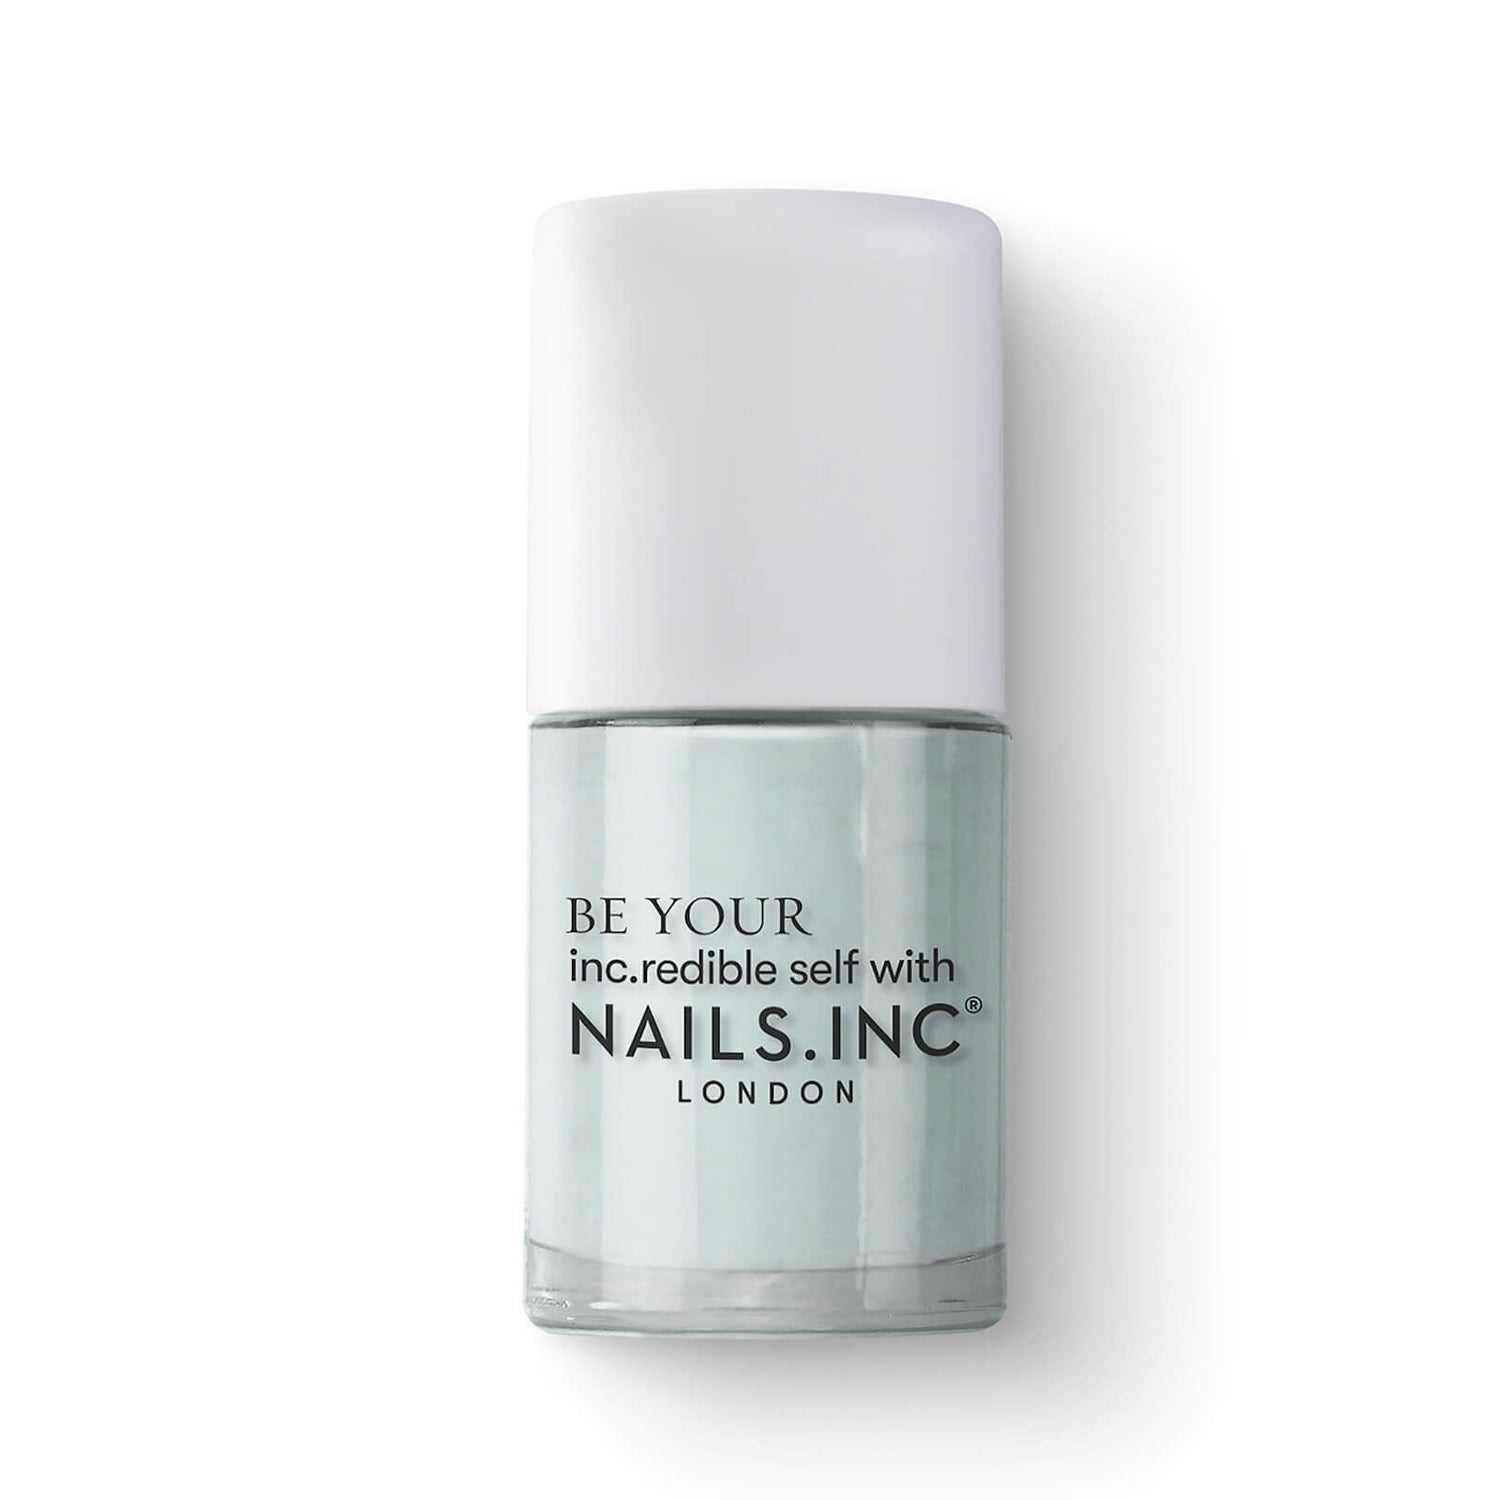 nails inc. Palace gardens Nail polish | GLOSSYBOX